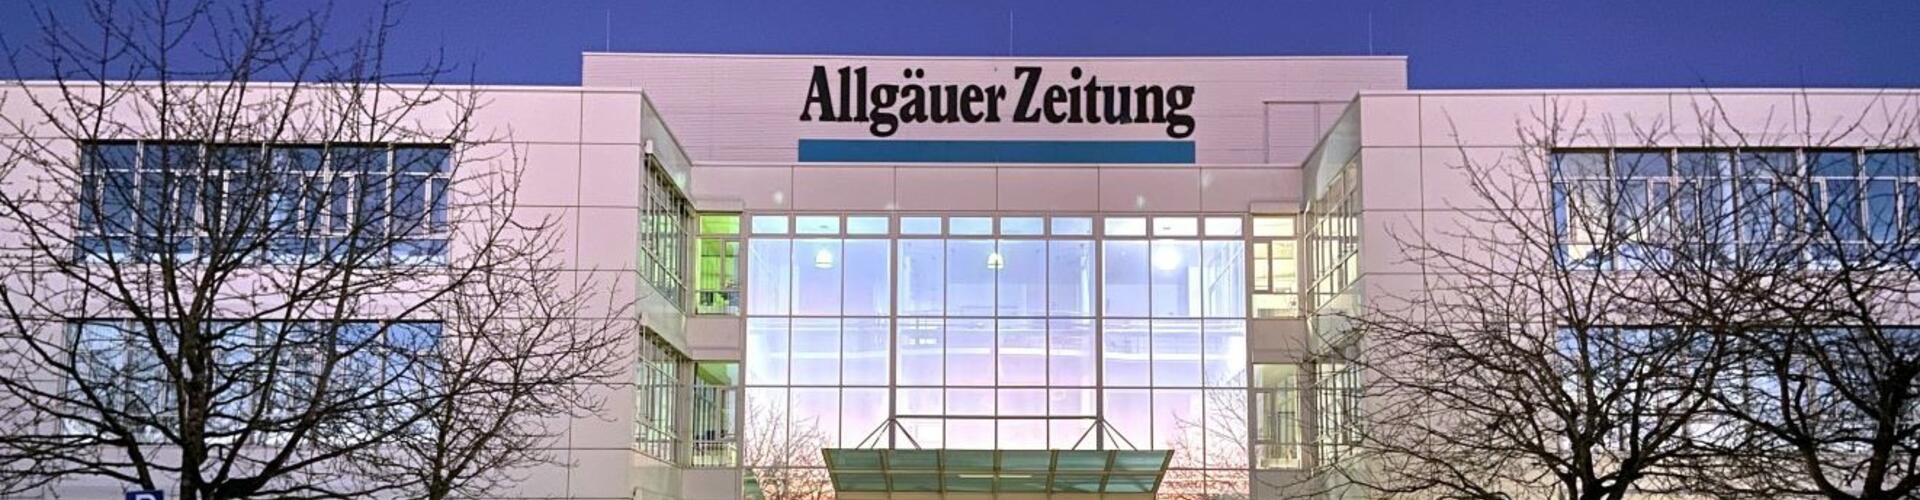 Mediengruppe Allgäuer Zeitung cover